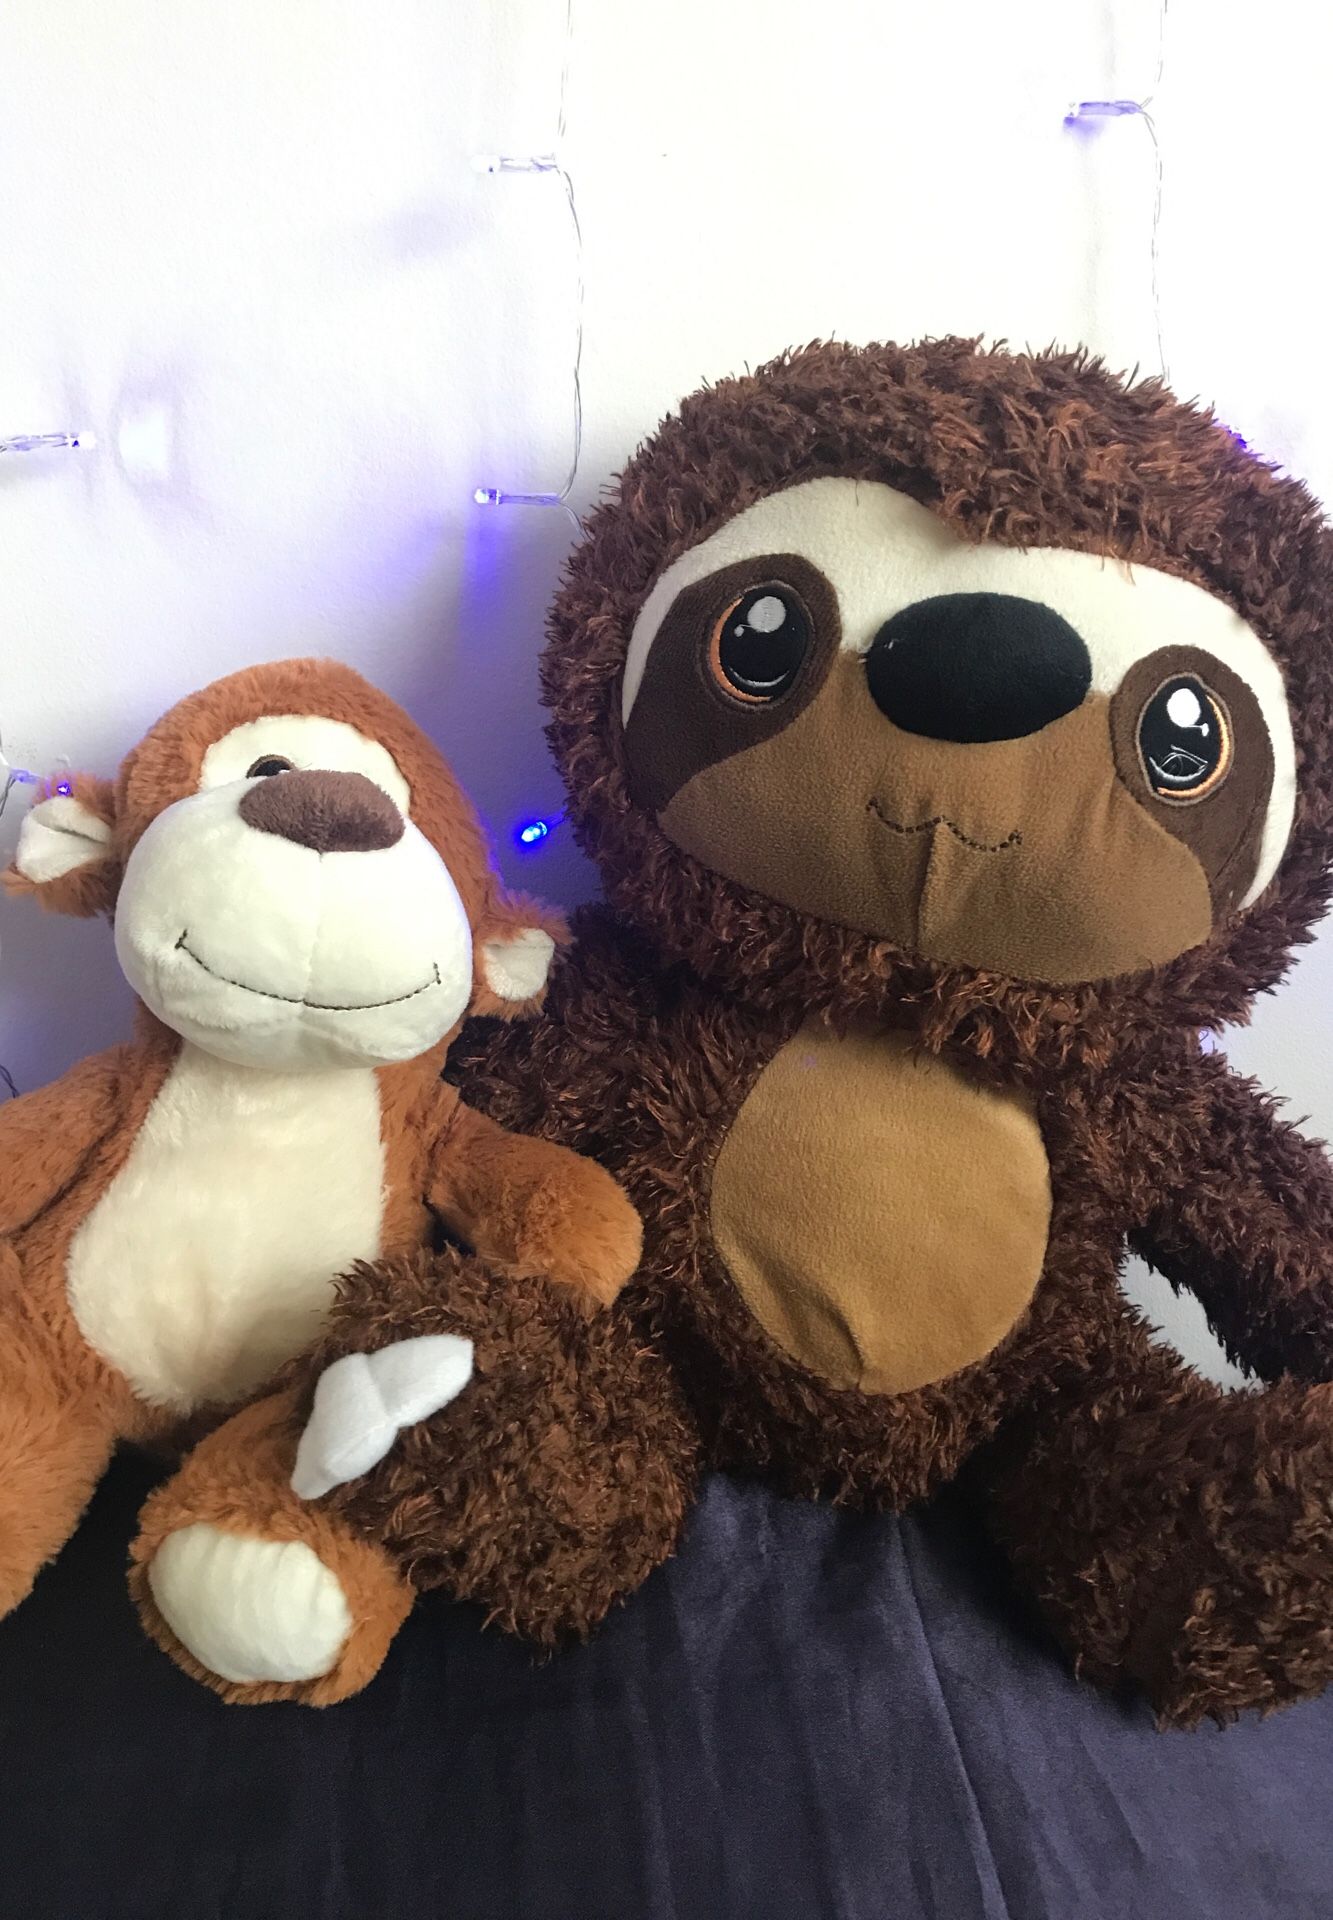 Sloth & Teddy bear stuffed animals